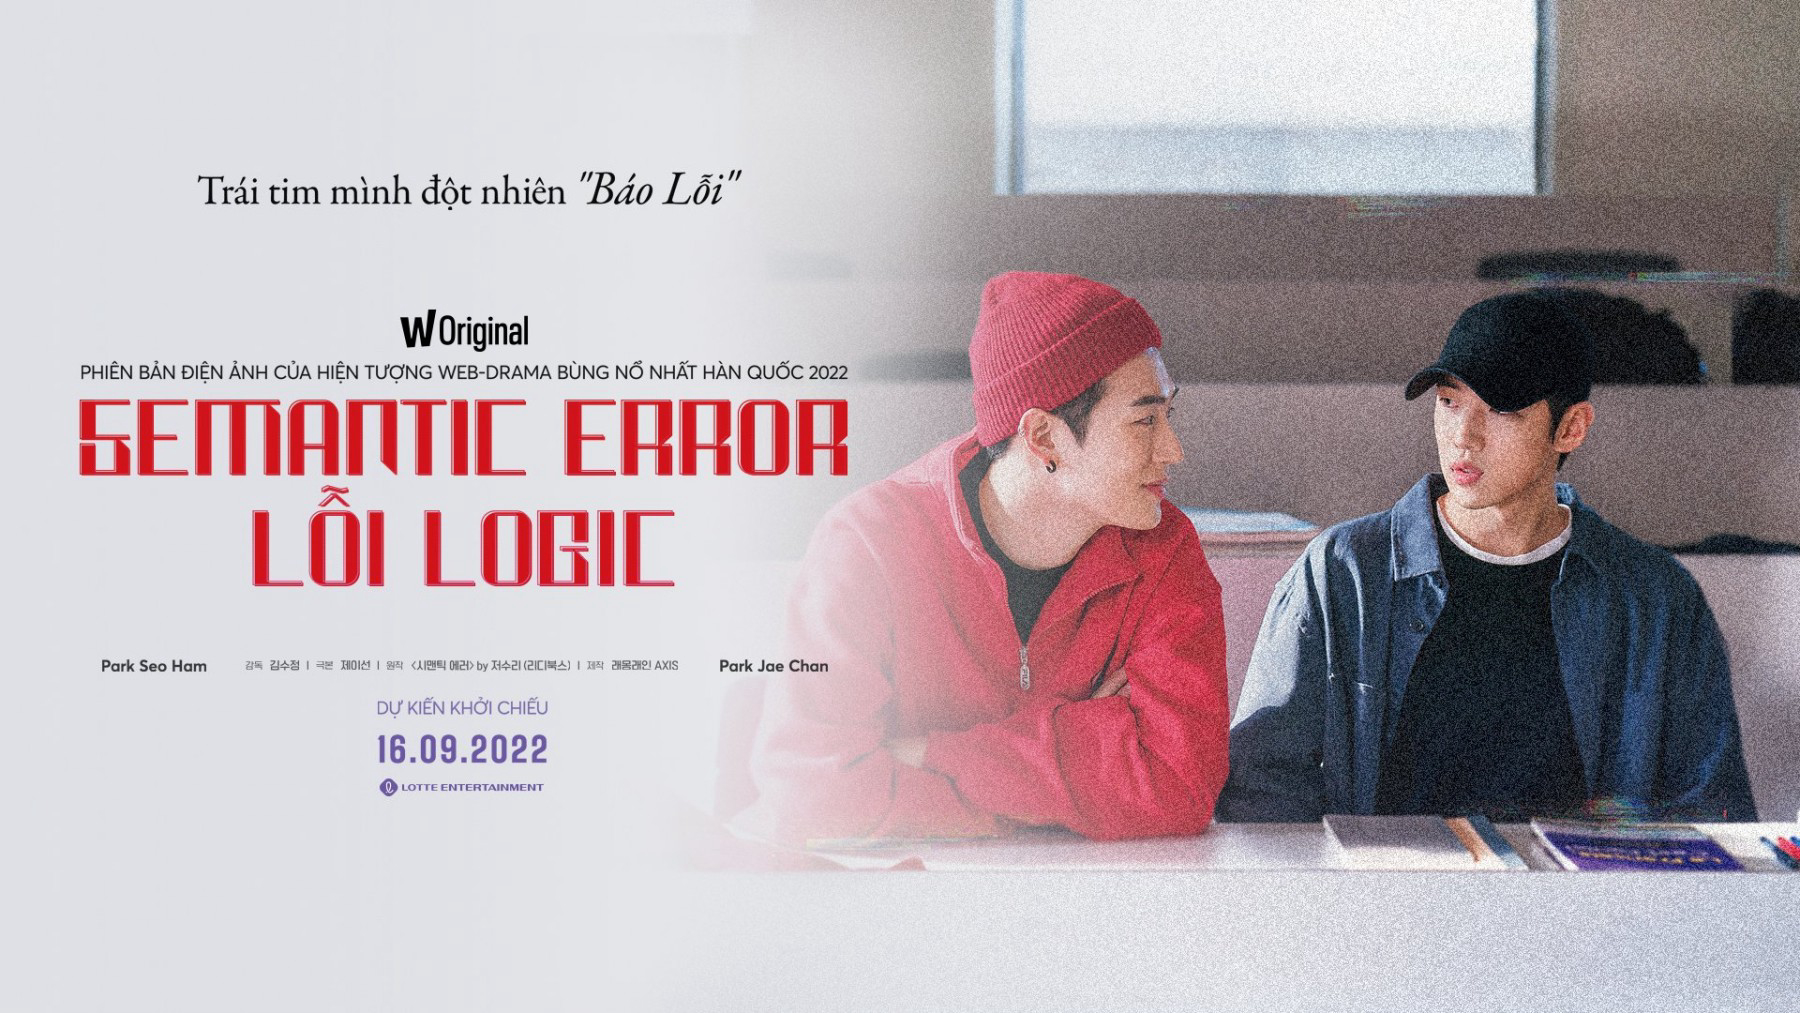 Lỗi Logic - Semantic Error: The Movie (2022)